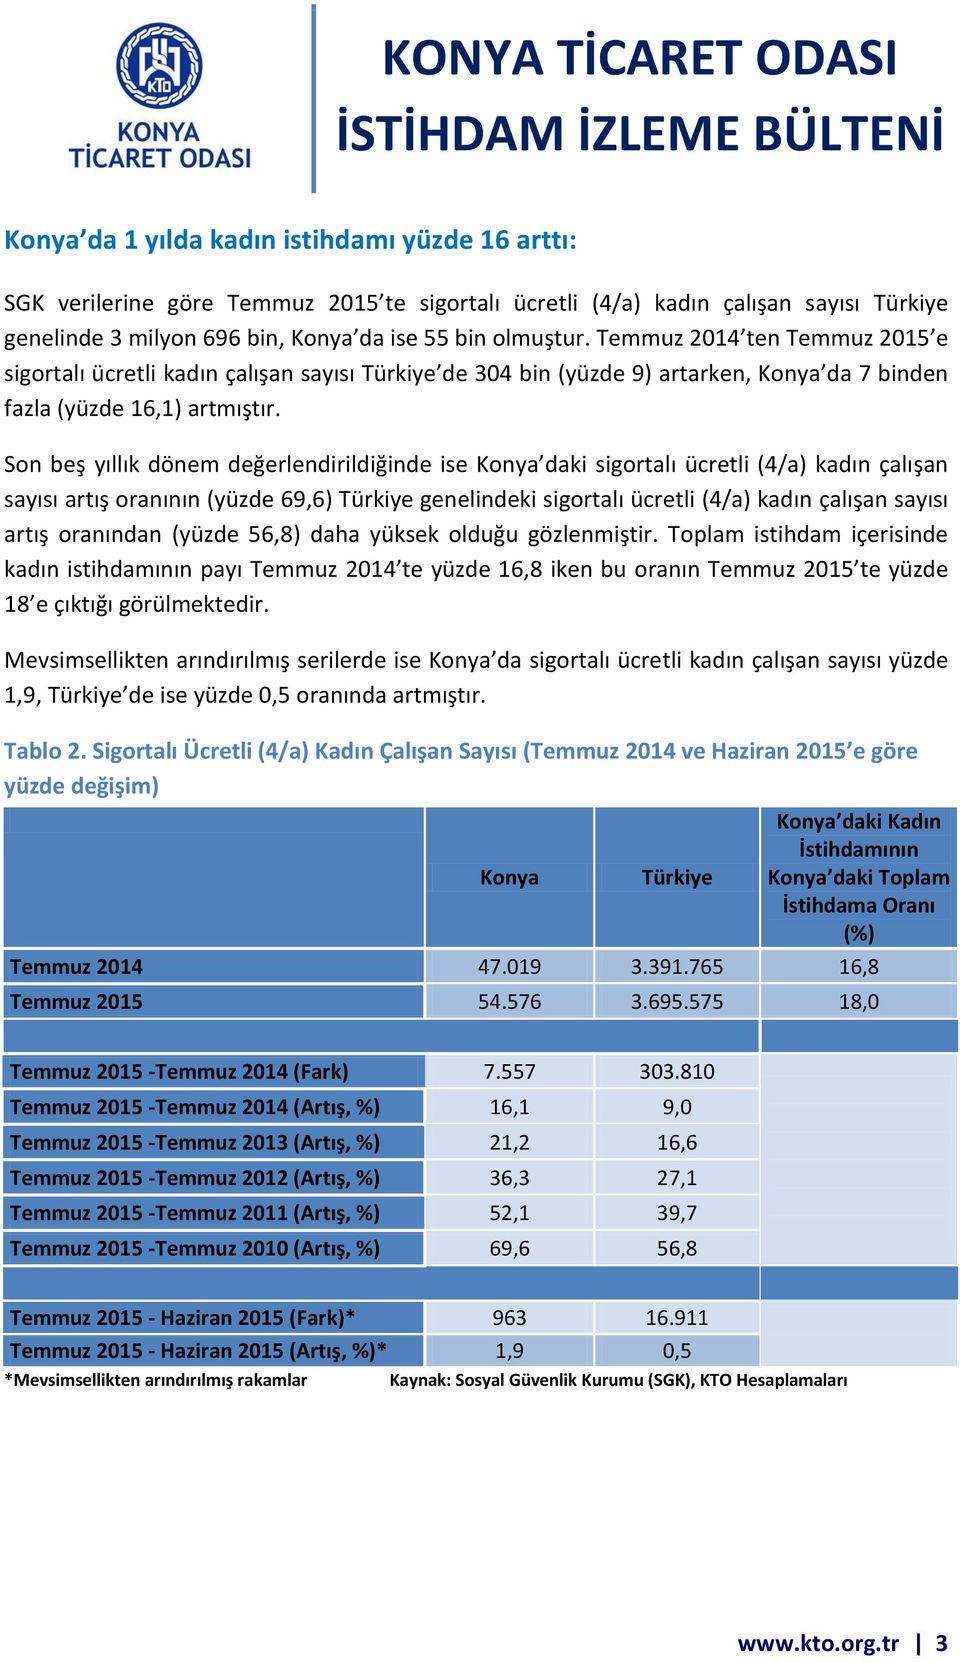 Son beş yıllık dönem değerlendirildiğinde ise Konya daki sigortalı ücretli (4/a) kadın çalışan sayısı artış oranının (yüzde 69,6) Türkiye genelindeki sigortalı ücretli (4/a) kadın çalışan sayısı